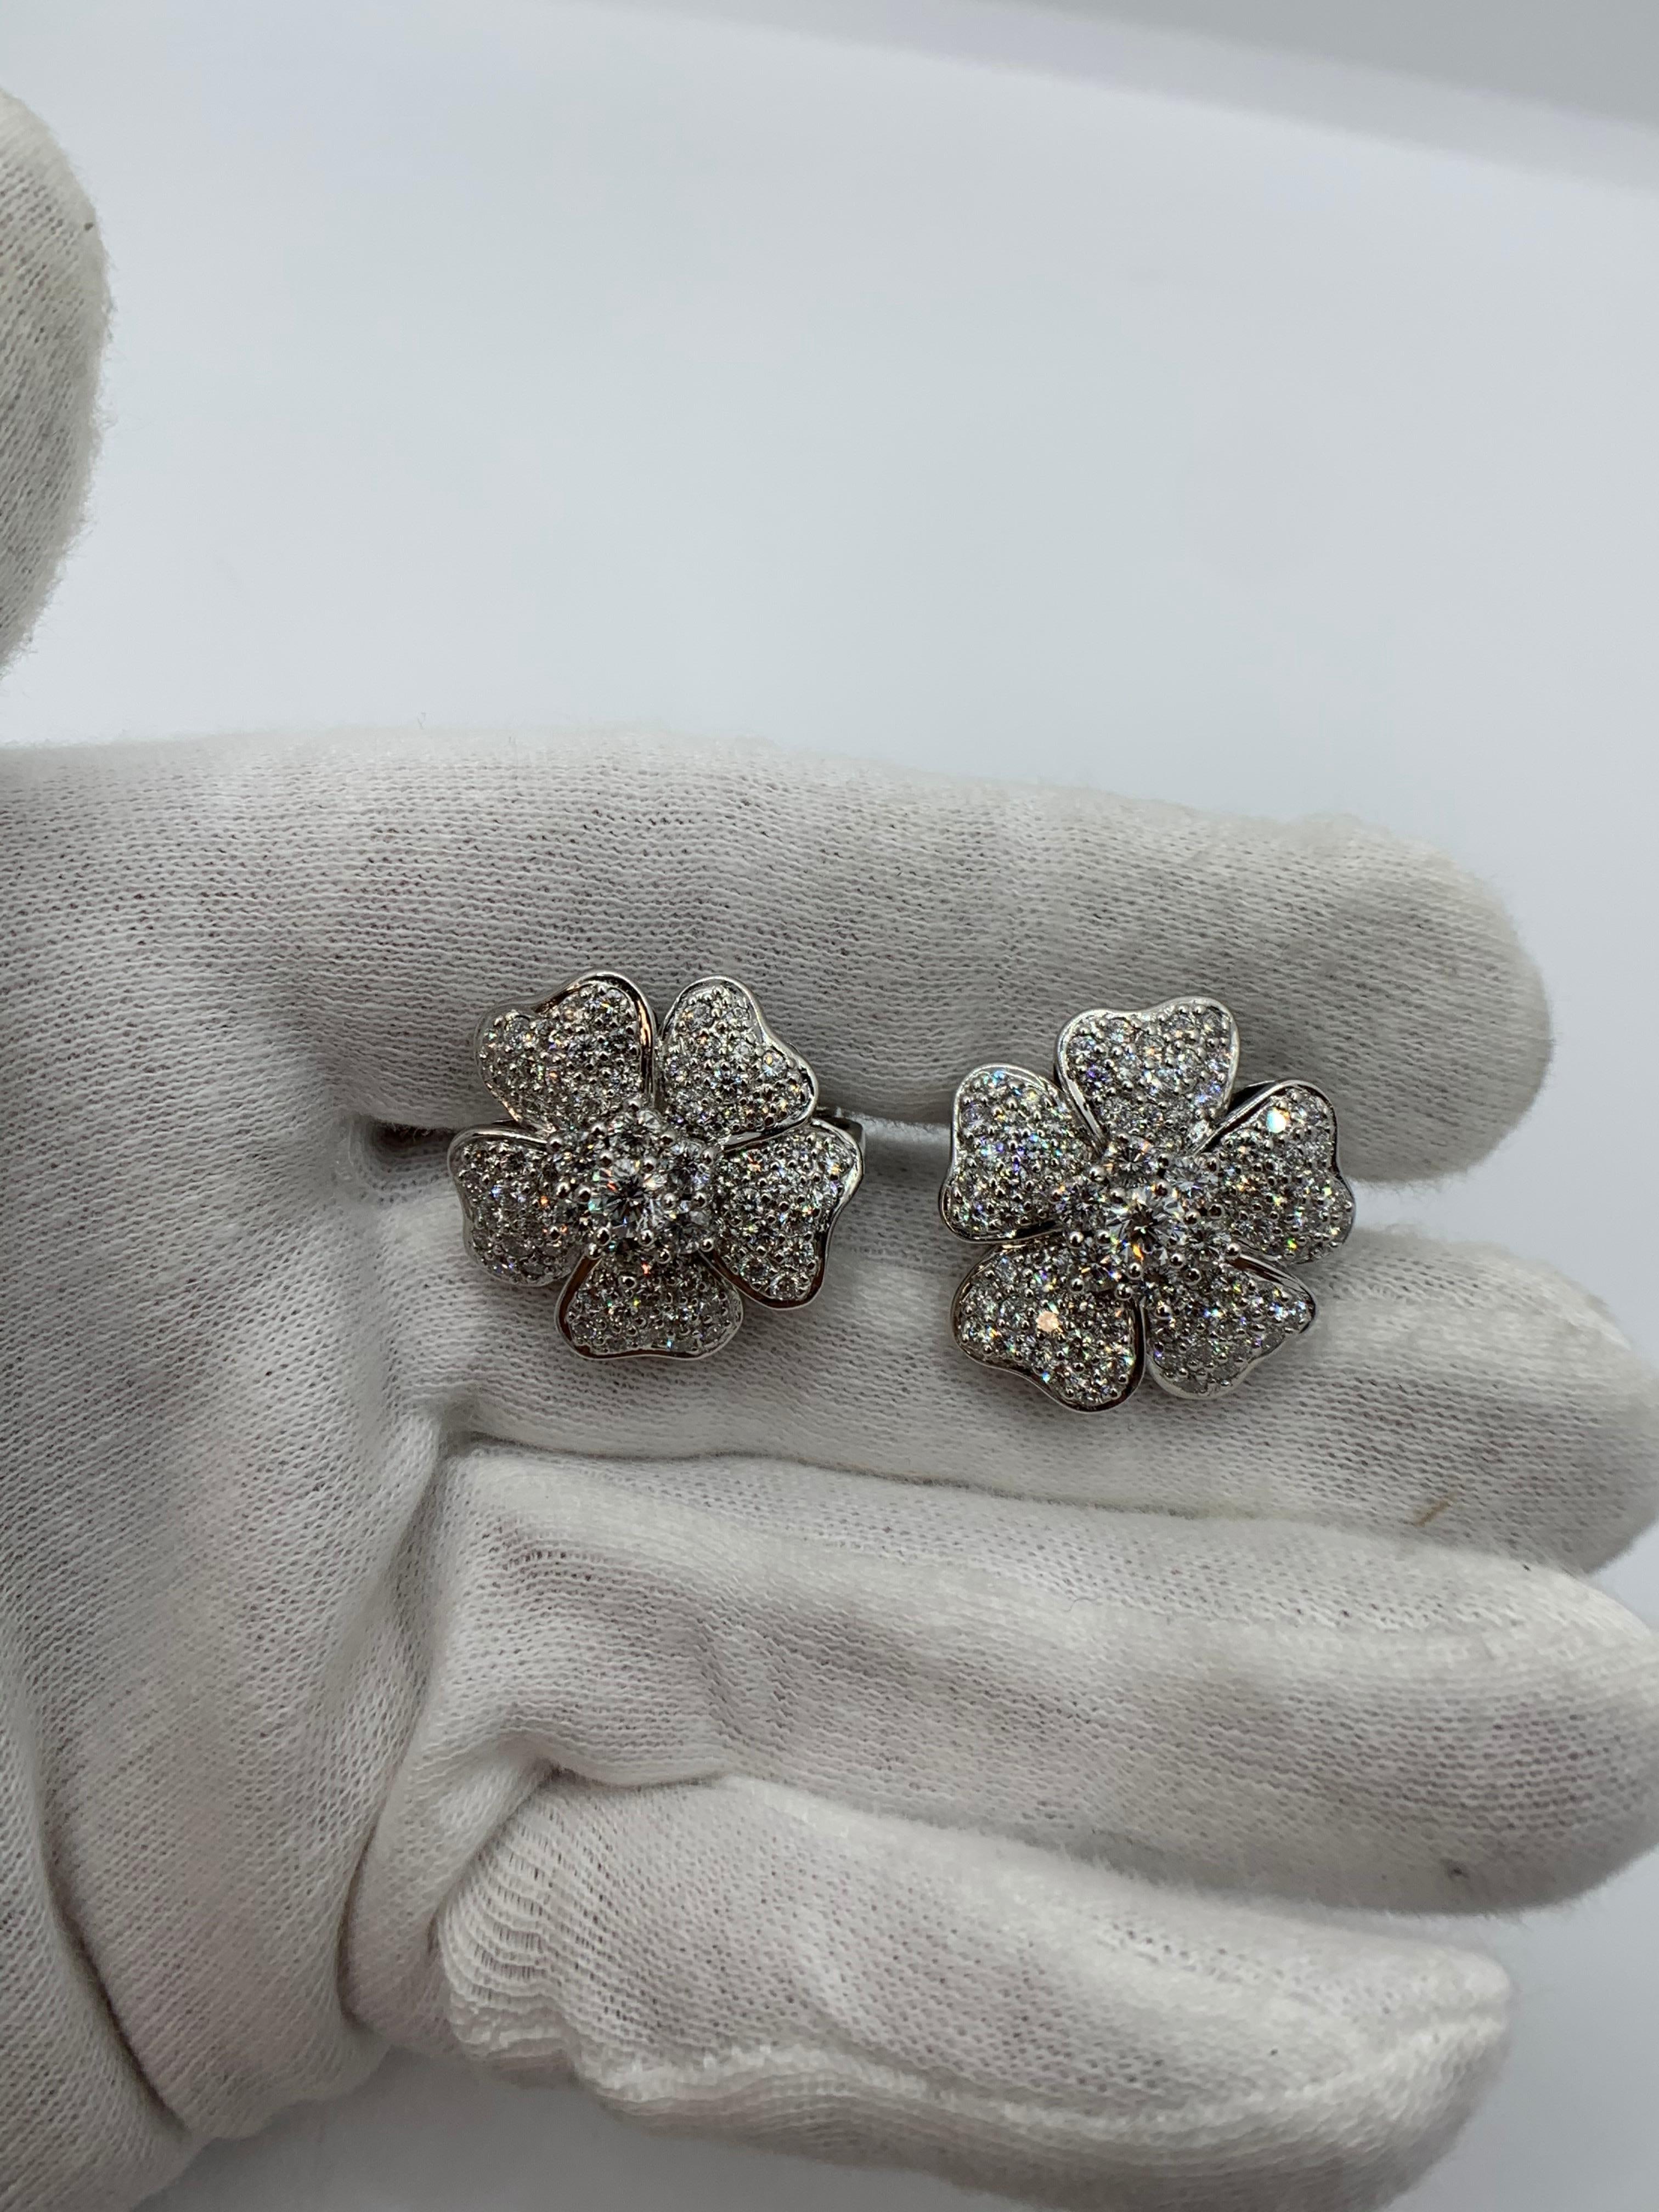 Blumen-Diamant-Ohrringe aus 18 Karat Weißgold.
6,50 Karat.